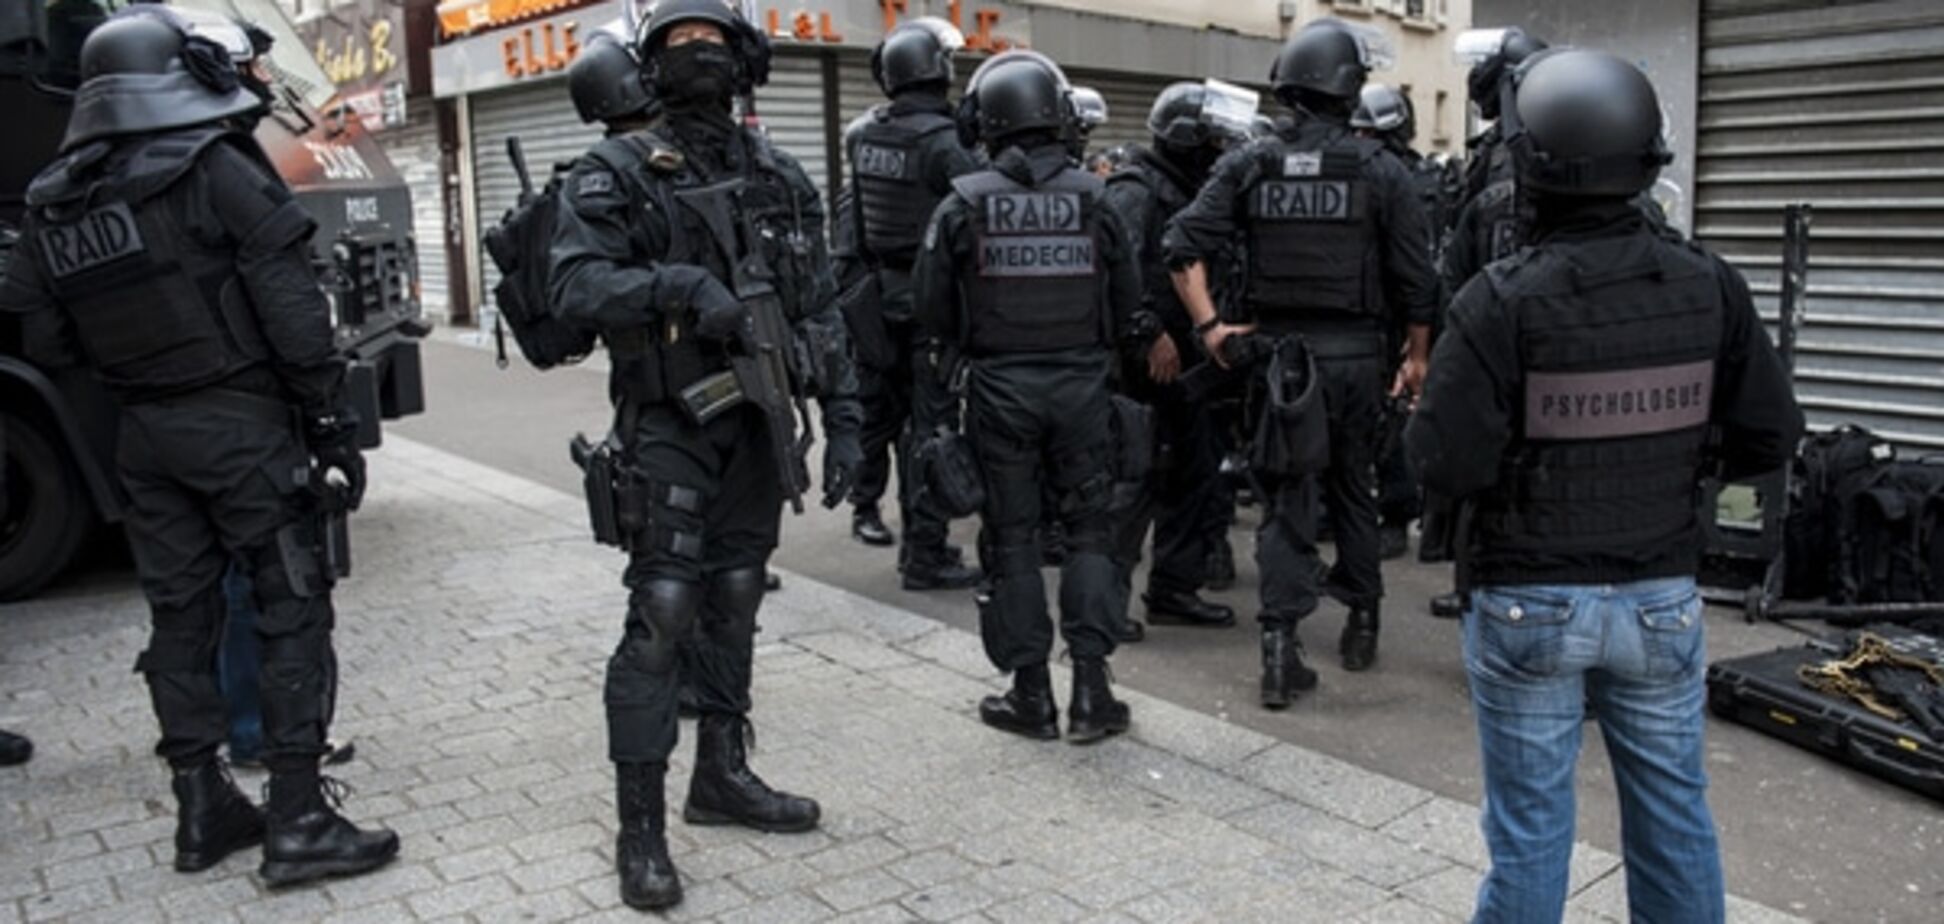 ЗМІ: у Бельгії затримали 9 підозрюваних у паризьких терактах